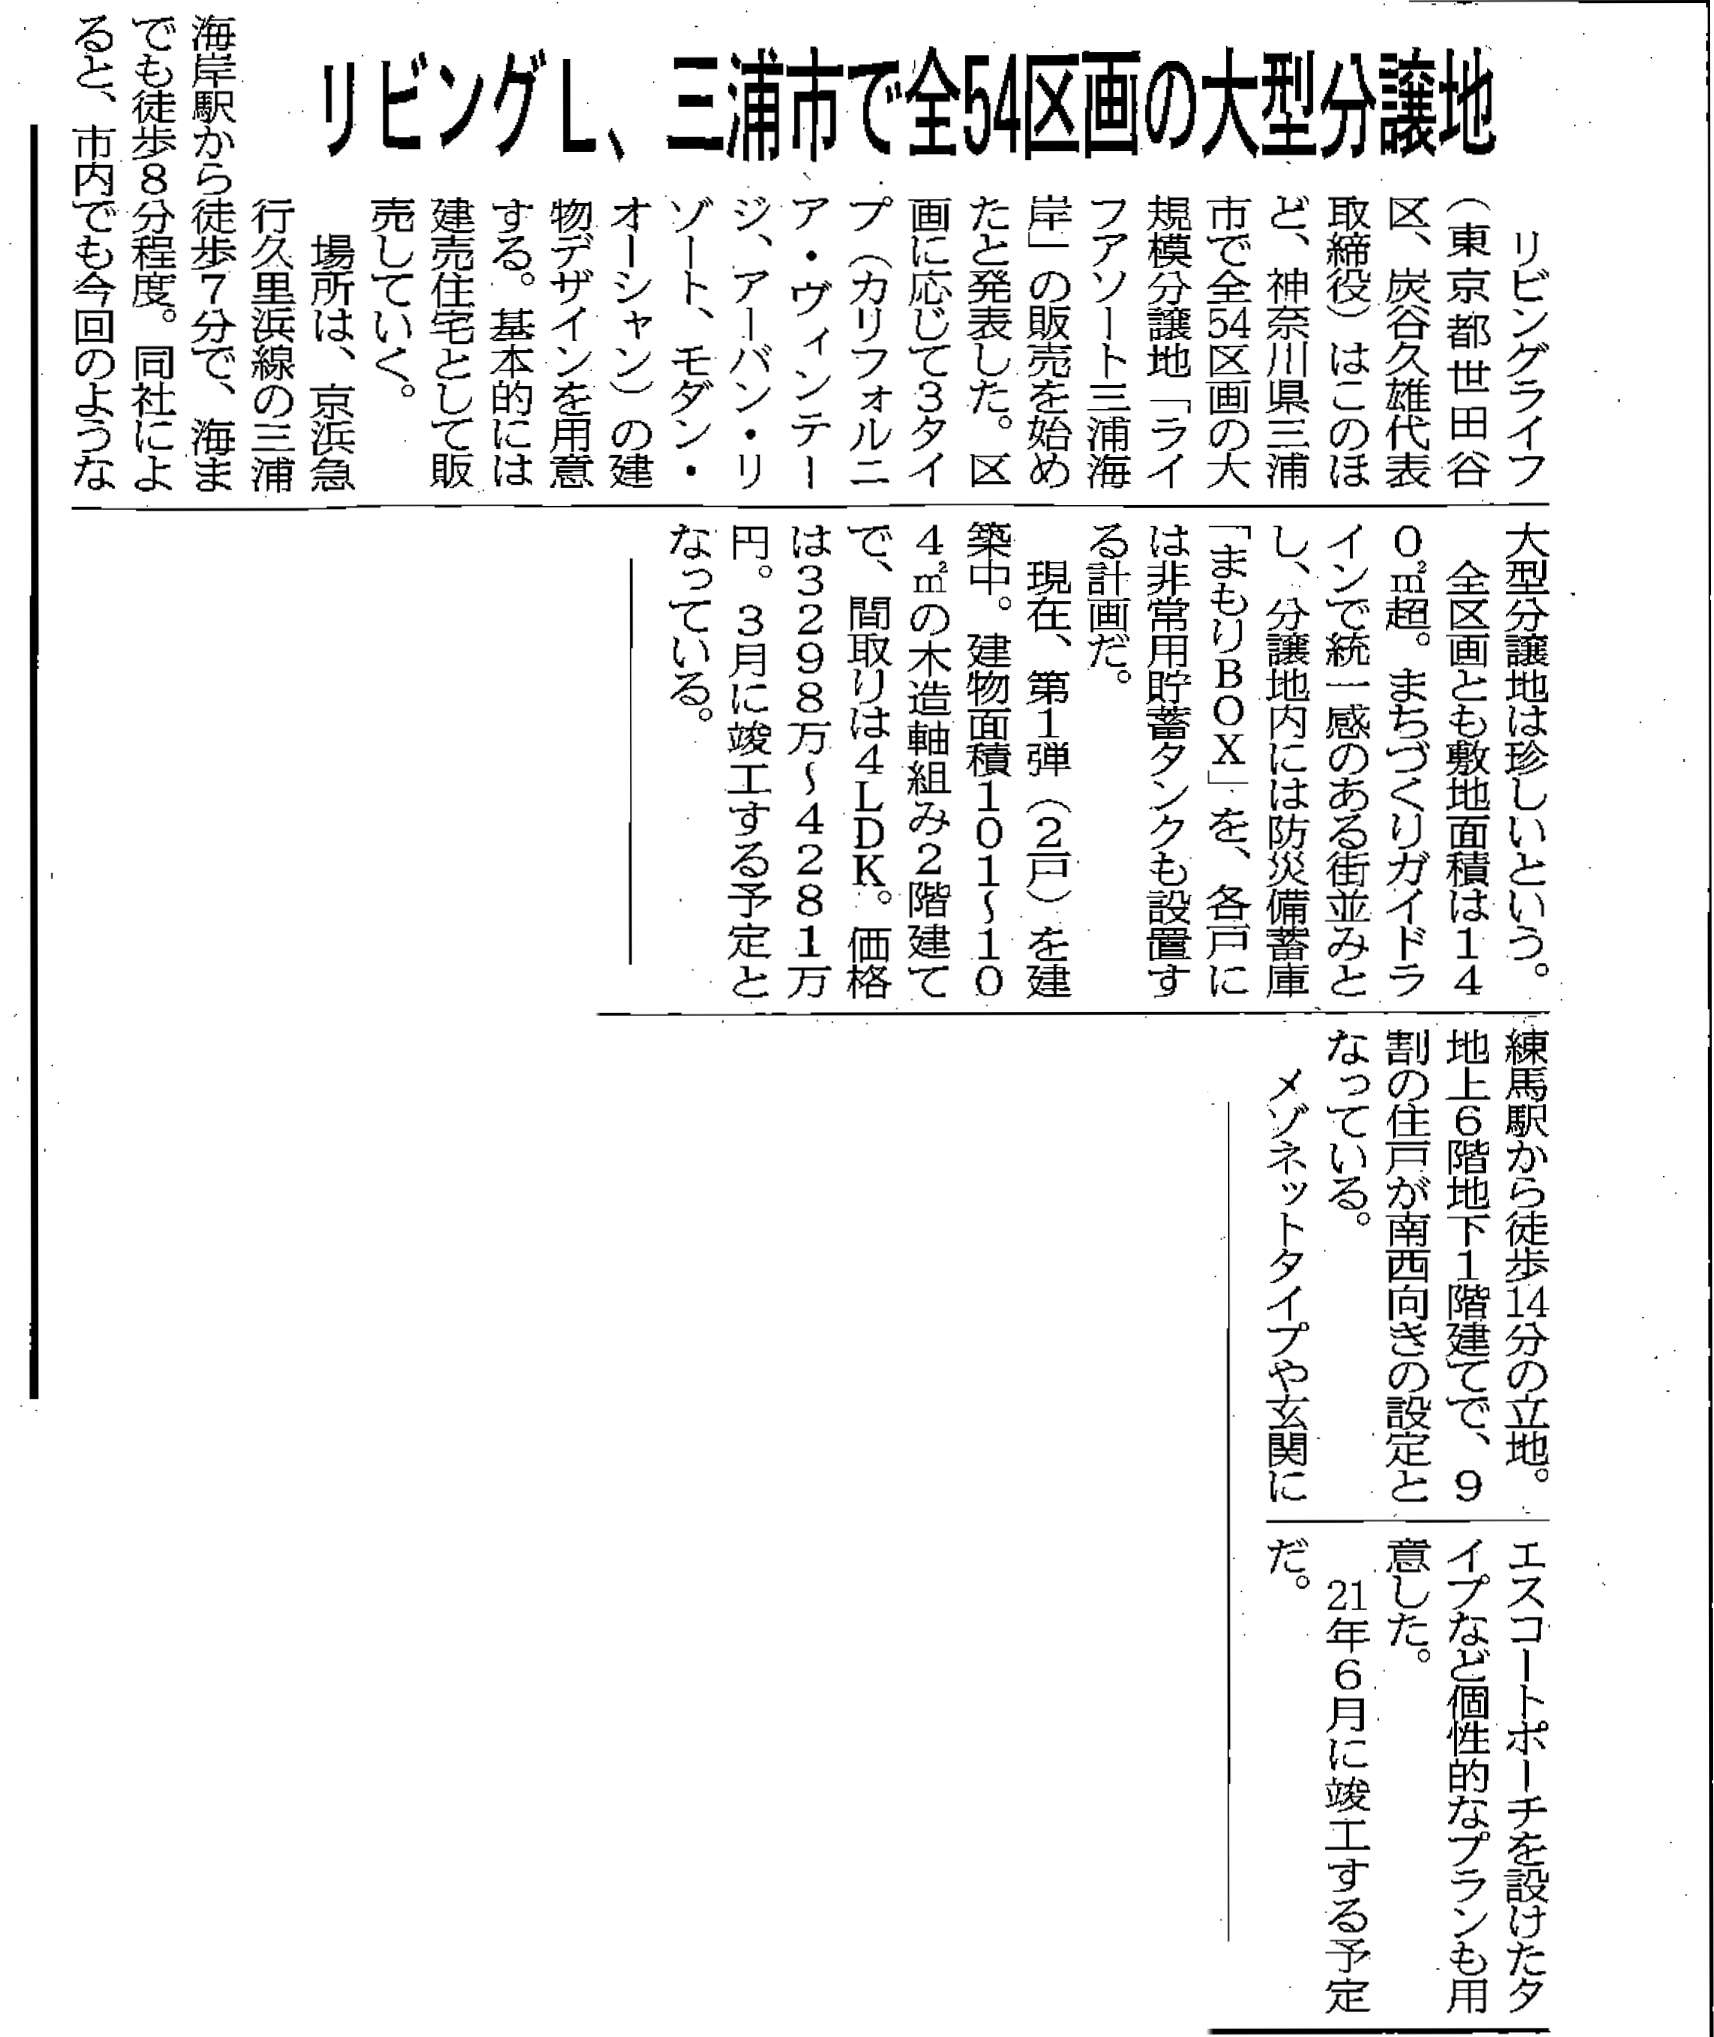 「ライフアソート三浦海岸マリン・コート」が『住宅新報』に掲載されました